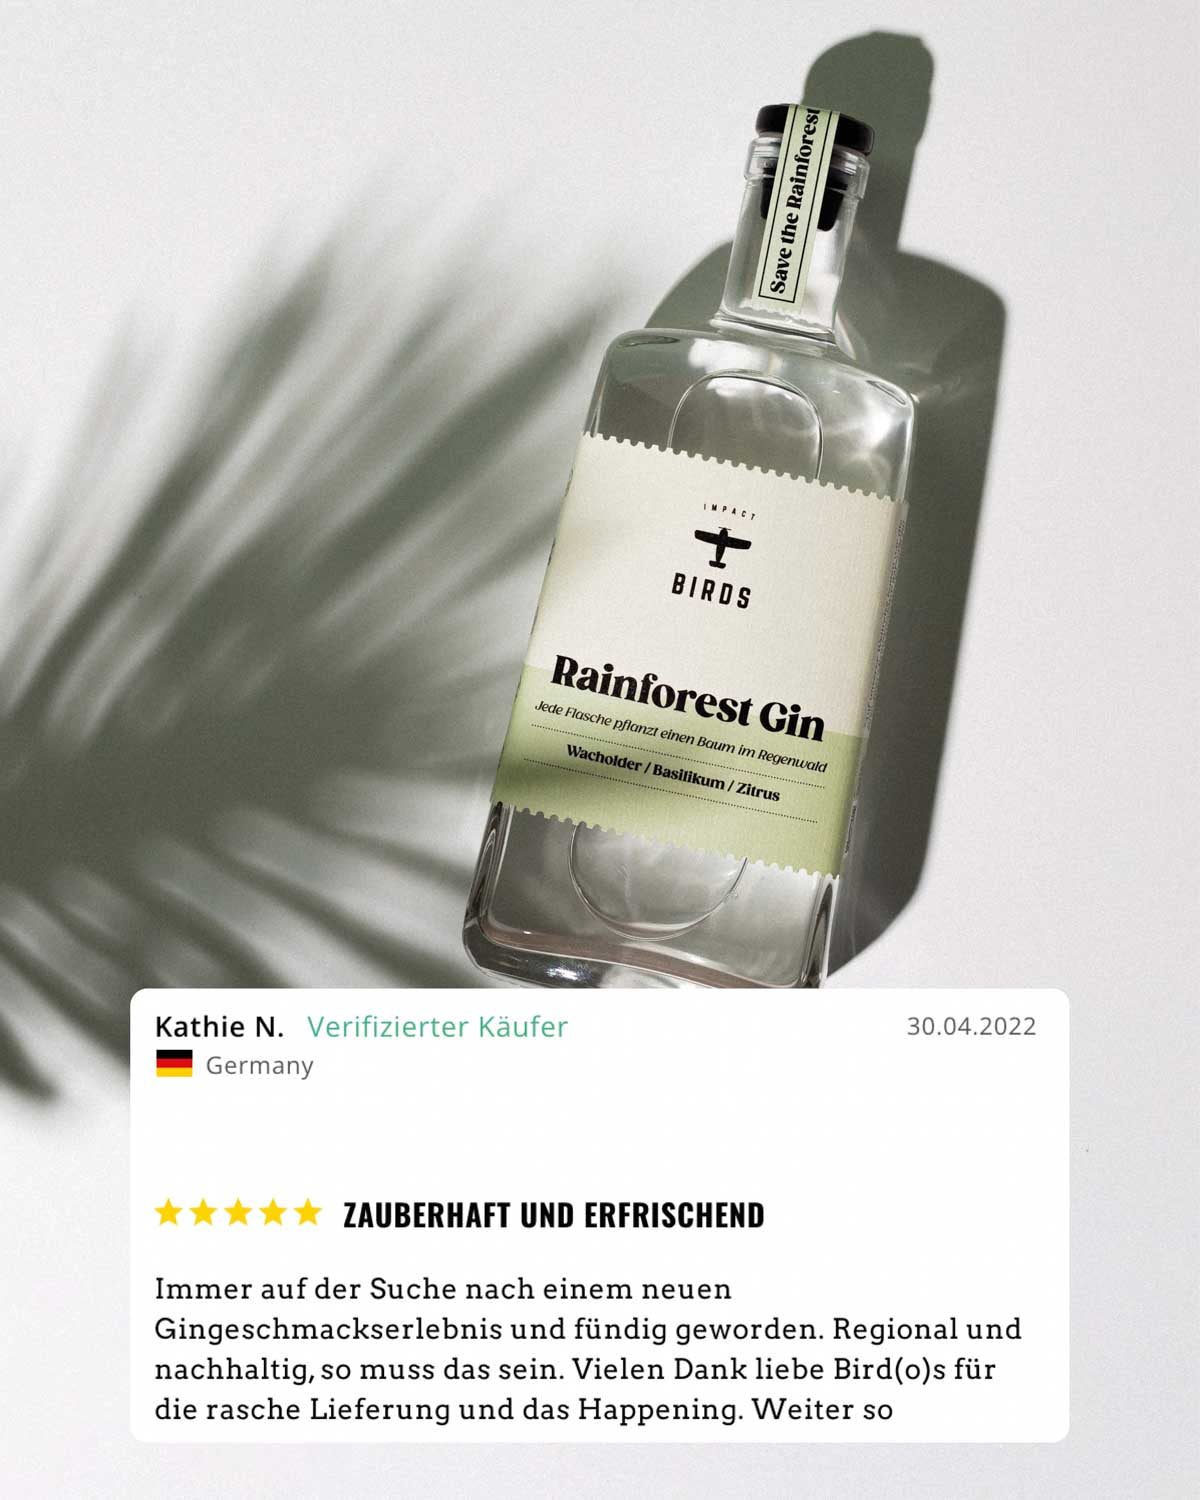 Der Rainforest Gin hat eine makellose Bewertung von fünf Sternen erhalten, verfasst von einer geprüften Kundin. Sie beschreibt den Rainforest Gin als bezaubernd und erfrischend.